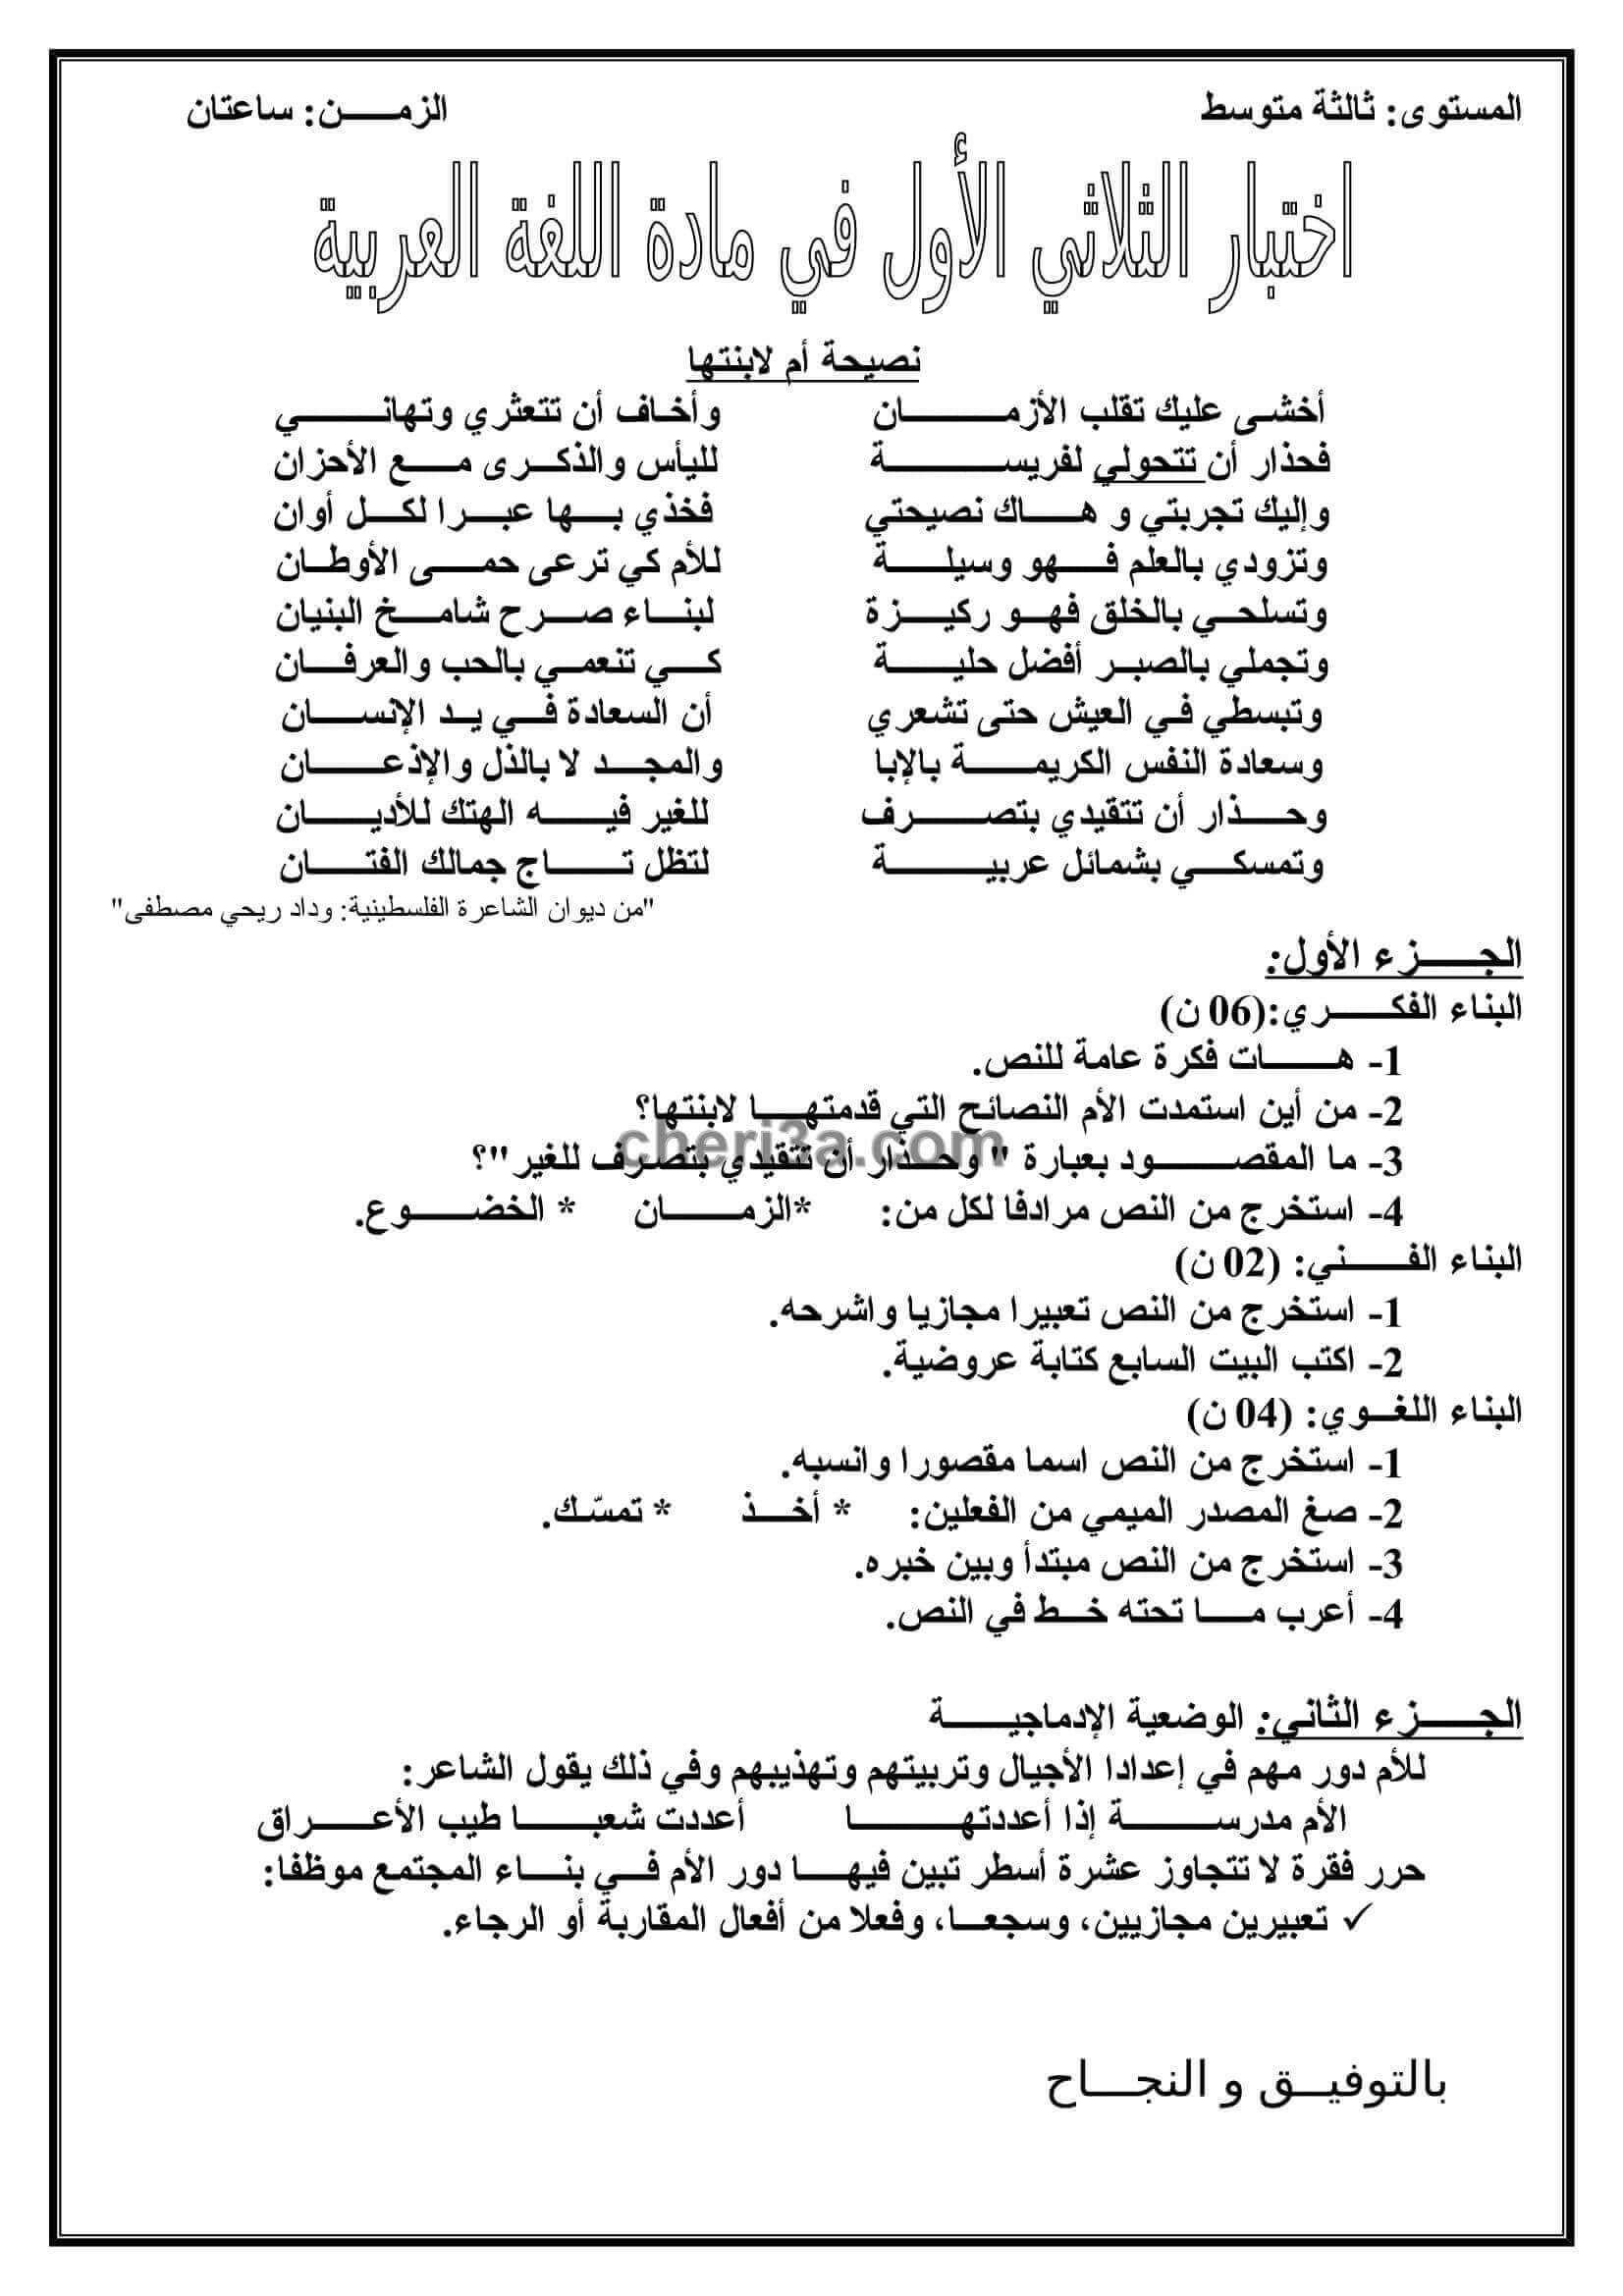 اختبار الفصل الاول للسنة الثالثة متوسط في اللغة العربية النموذج 11